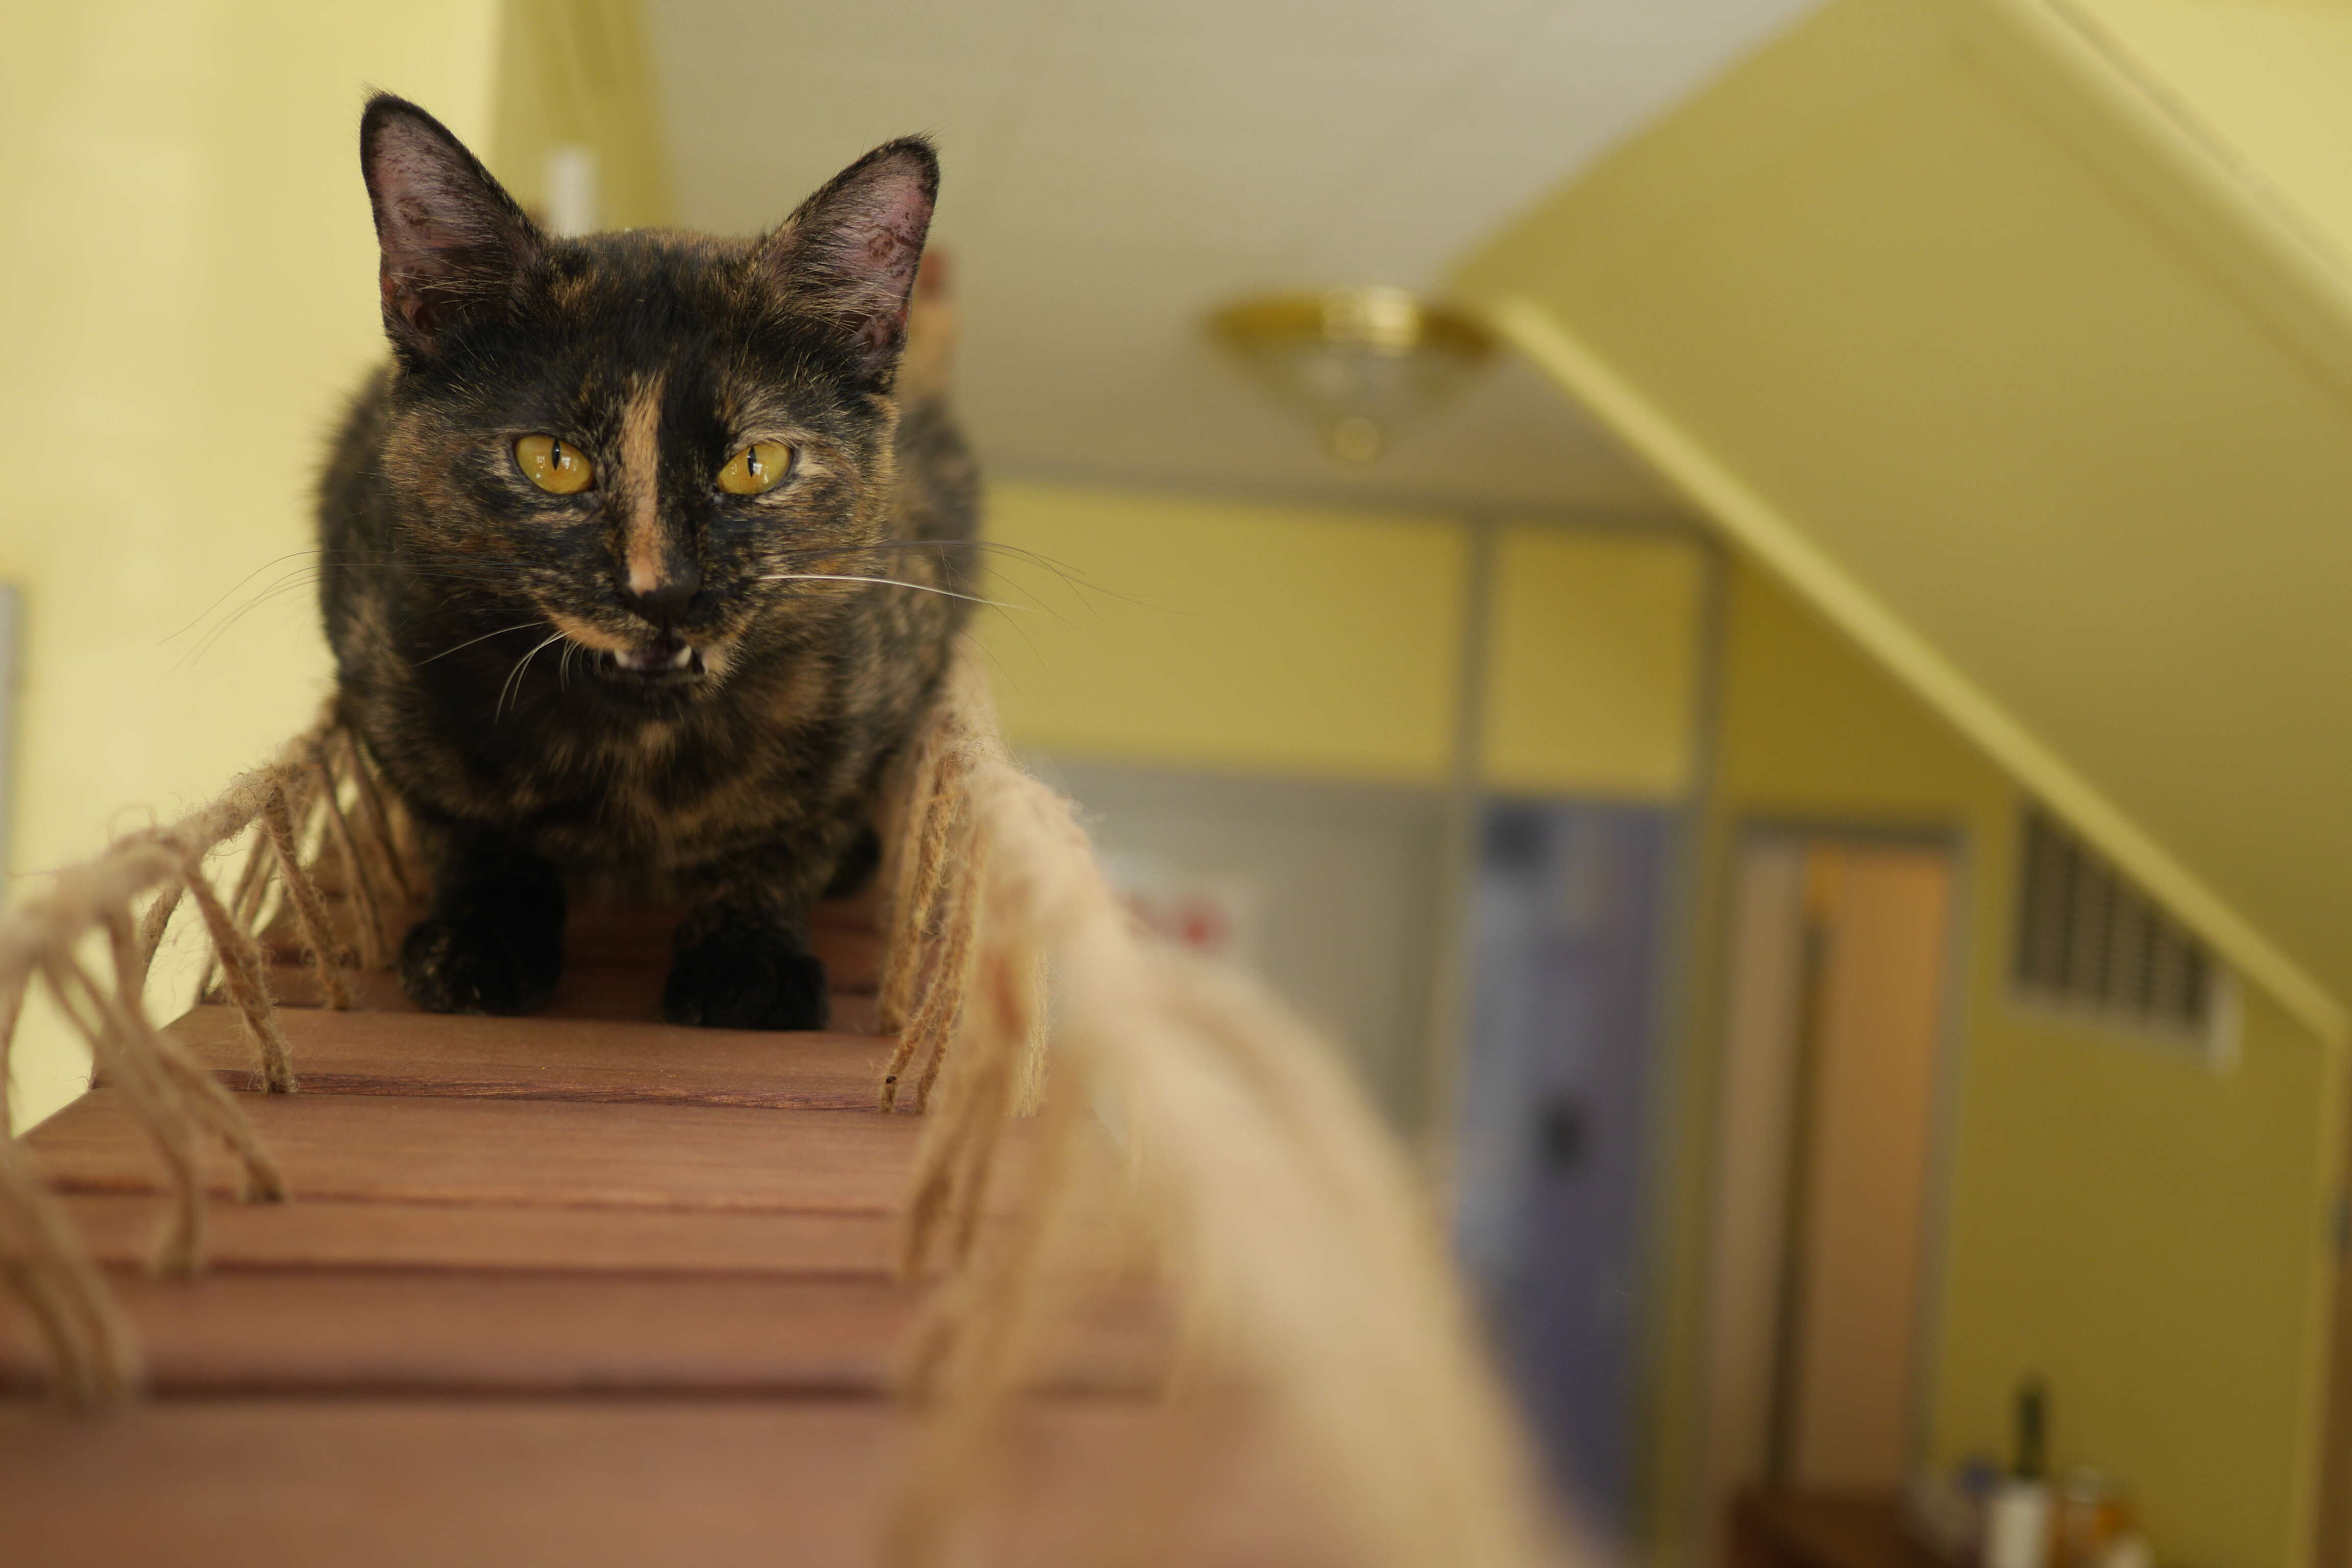 Adoptable tortoiseshell cat saved from Hurricane Harvey